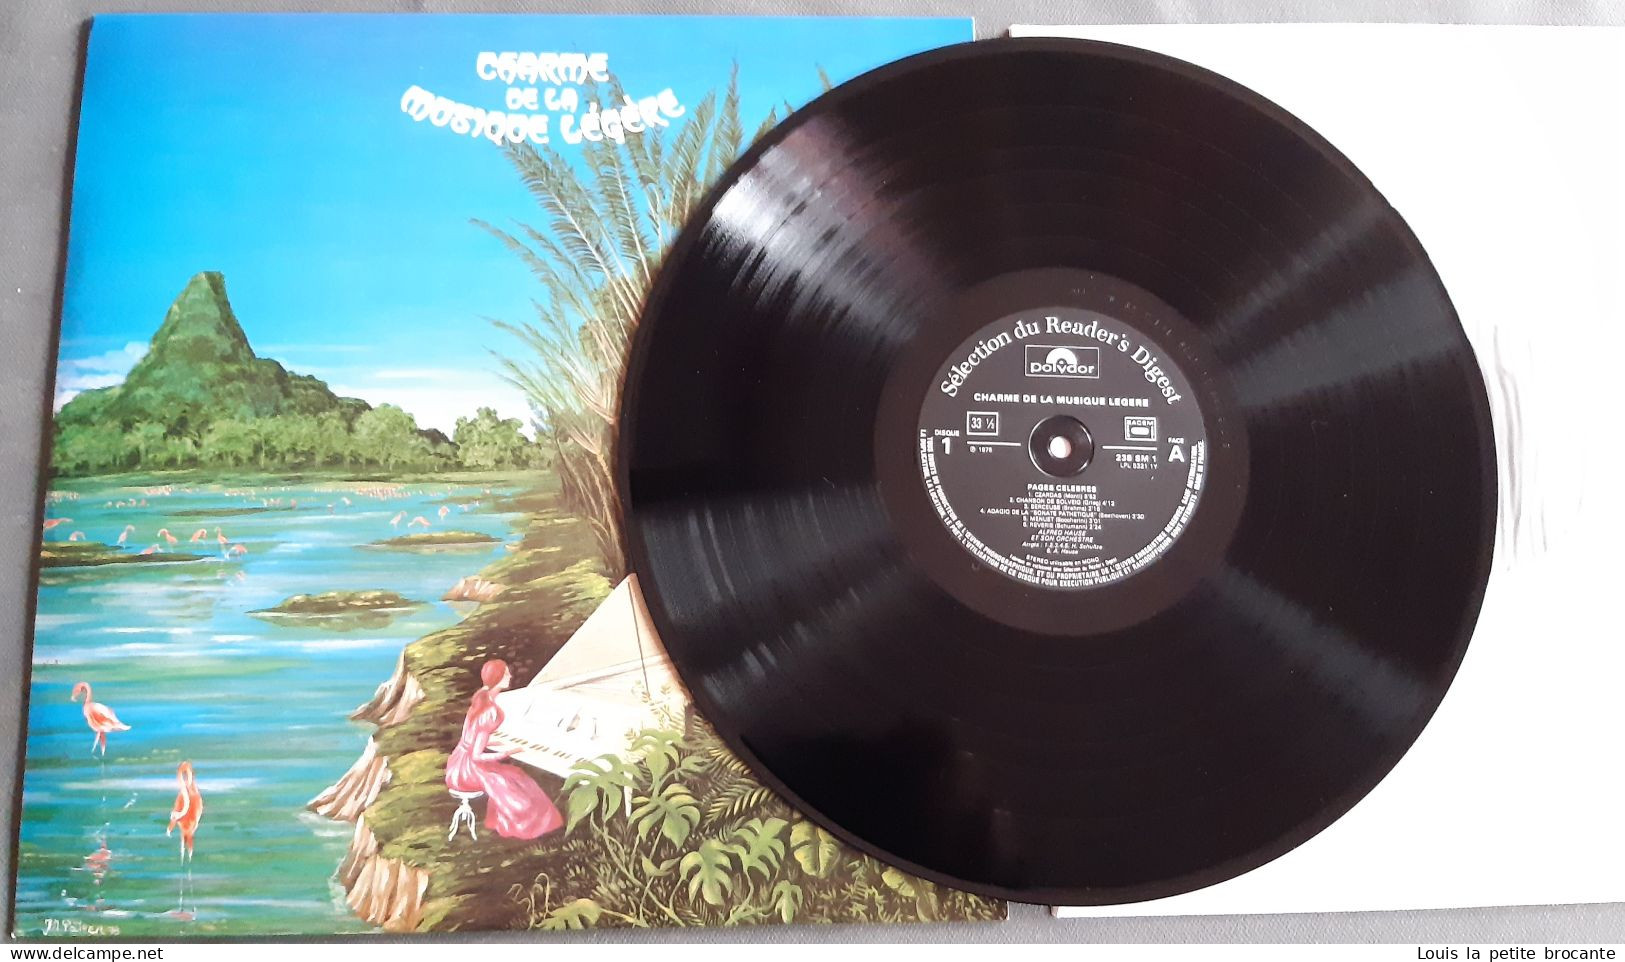 Coffret de 12 disques vinyles "Charme de la Musique Légère", 33 tours stéréo. POLYDOR, Sélection du Reader's Digest 1979